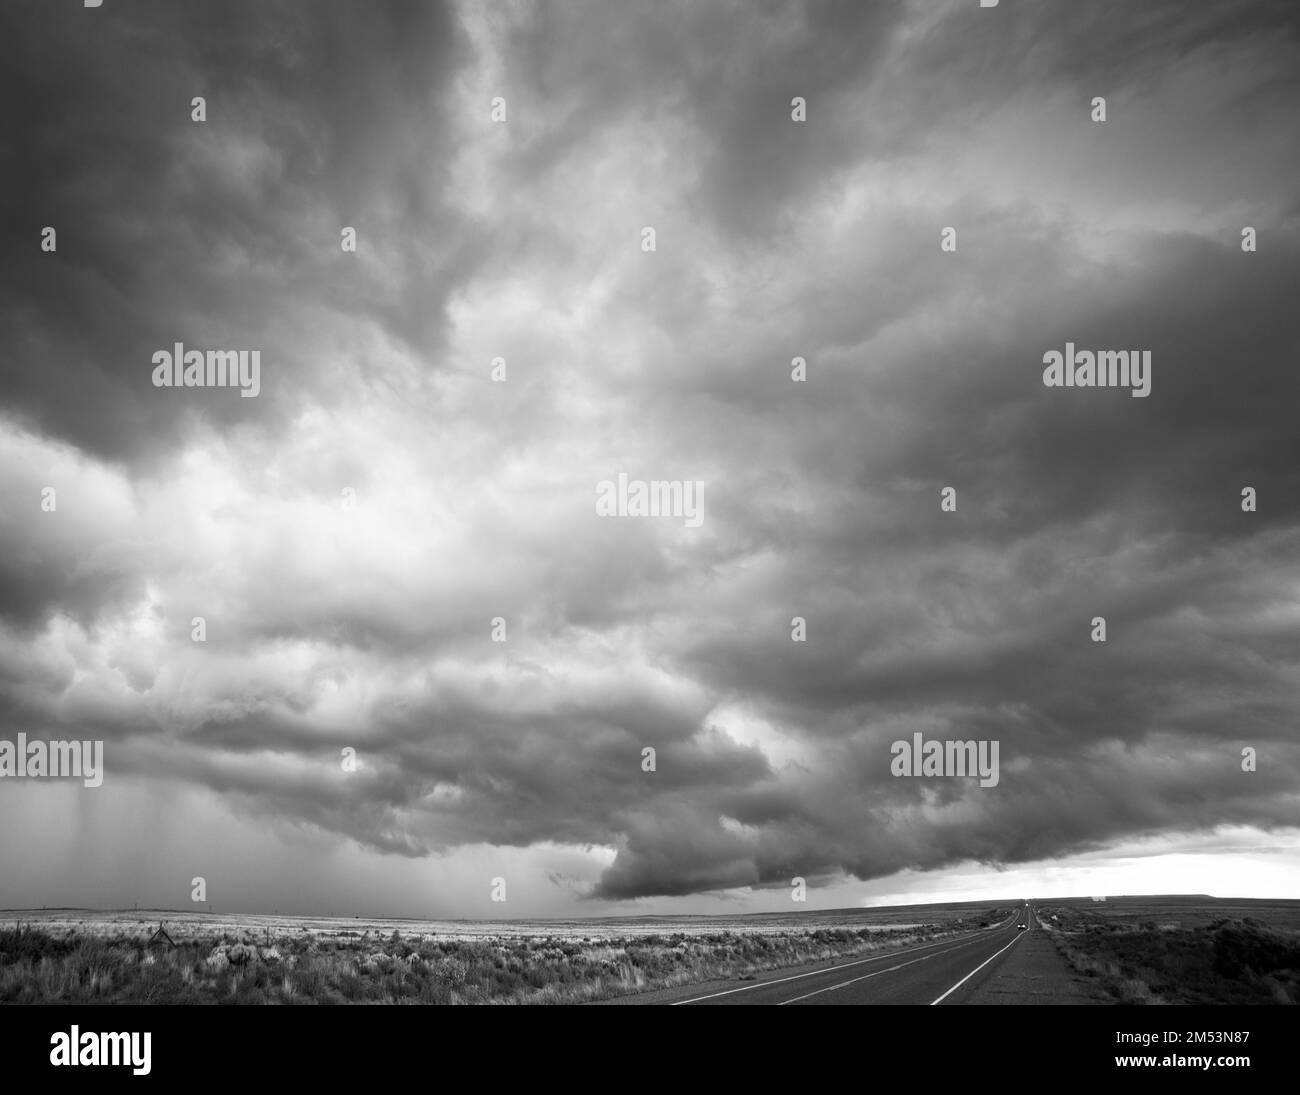 Im ländlichen New Mexico, südlich von Farmington, New Mexico, USA, zieht sich ein Sturm über den Himmel. Stockfoto